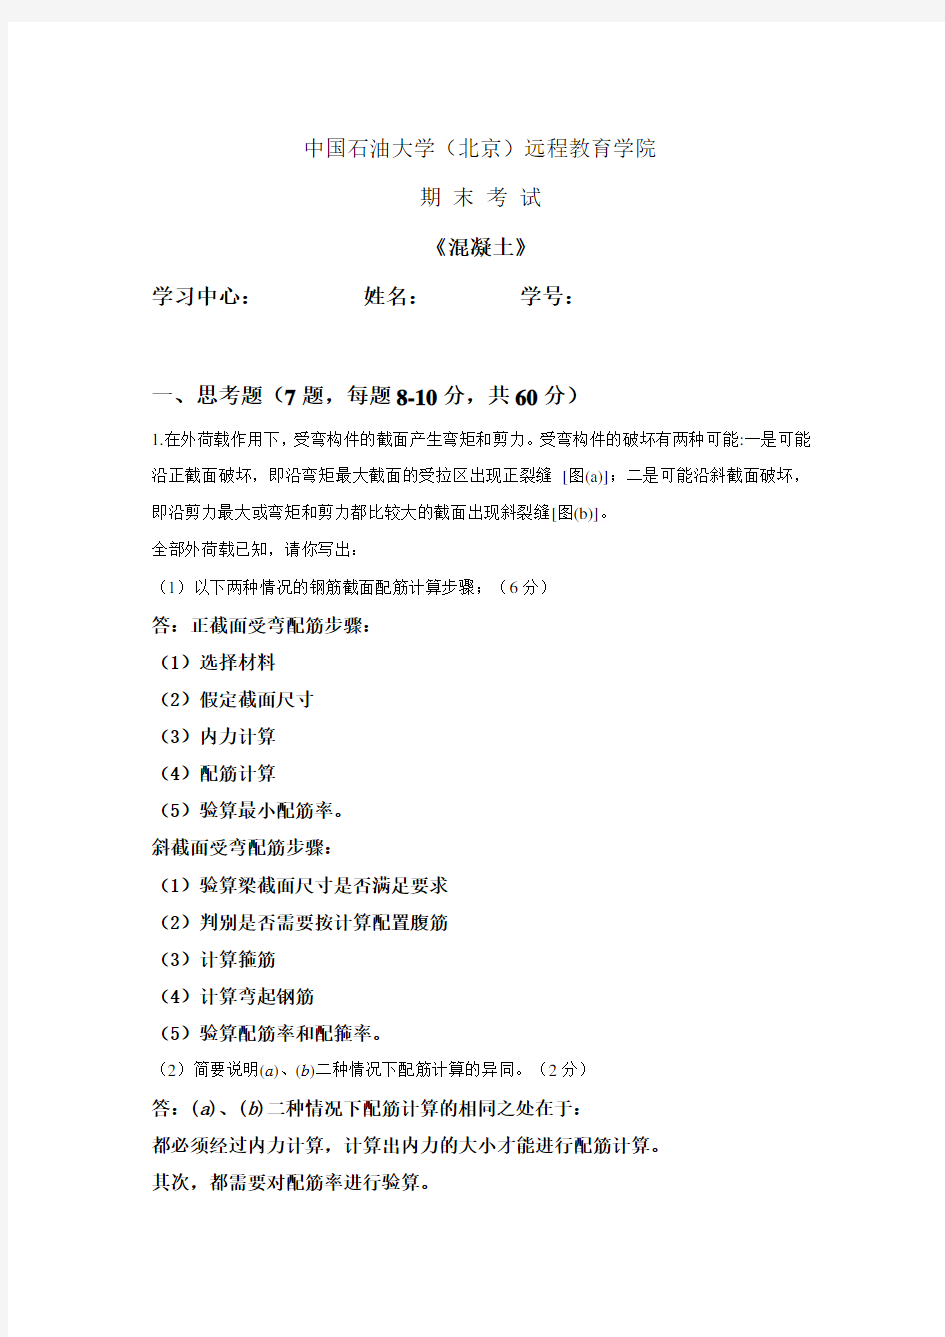 中国石油大学(北京)《混凝土》在线考试答案